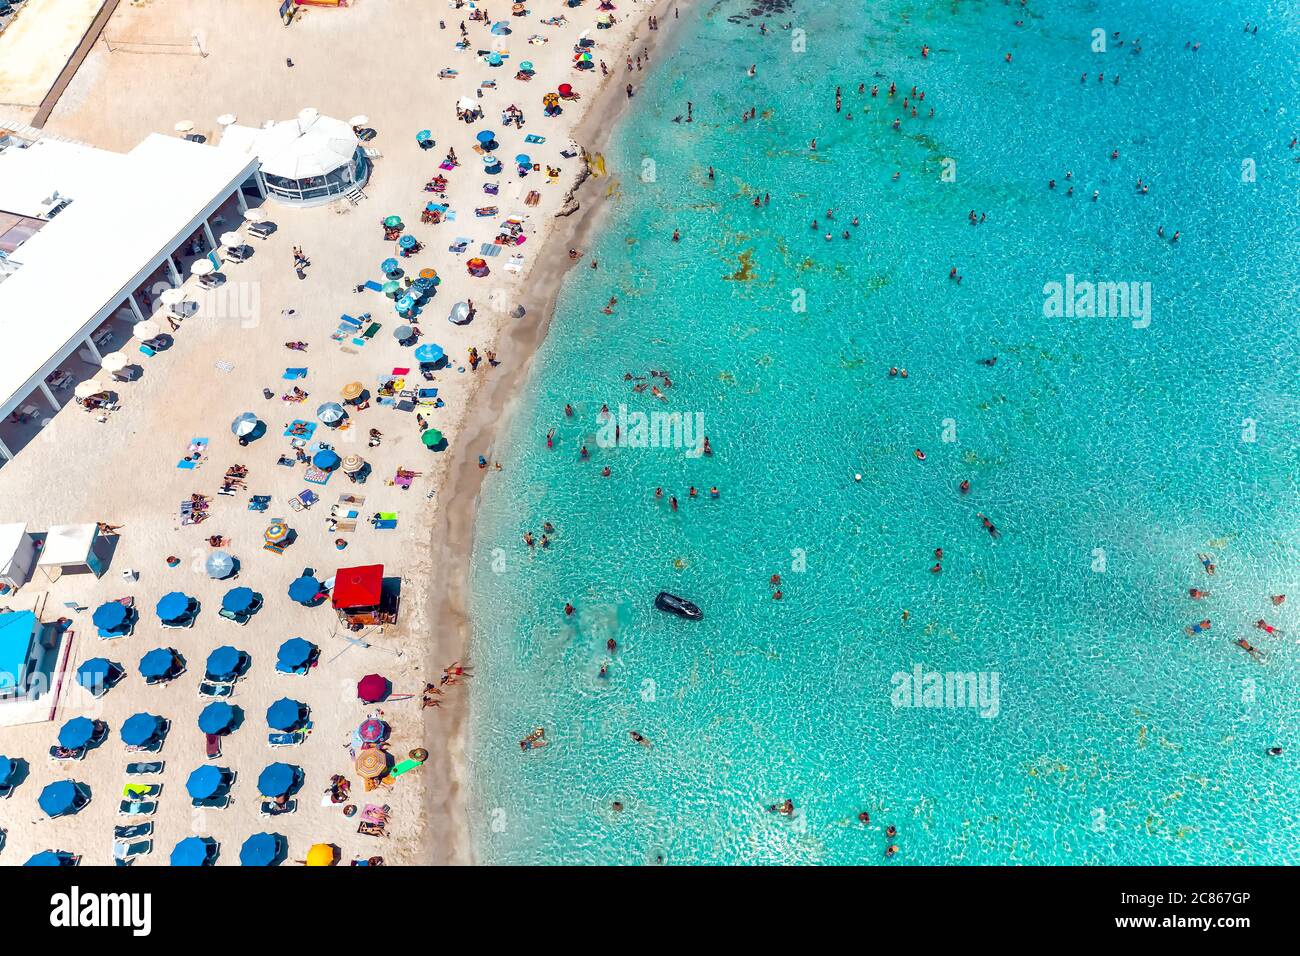 Luftaufnahme Nissi Bay Beach. Menschen, Sonnenschirme, Sand und Meereswelle. Bezirk Famagusta, zypern Stockfoto